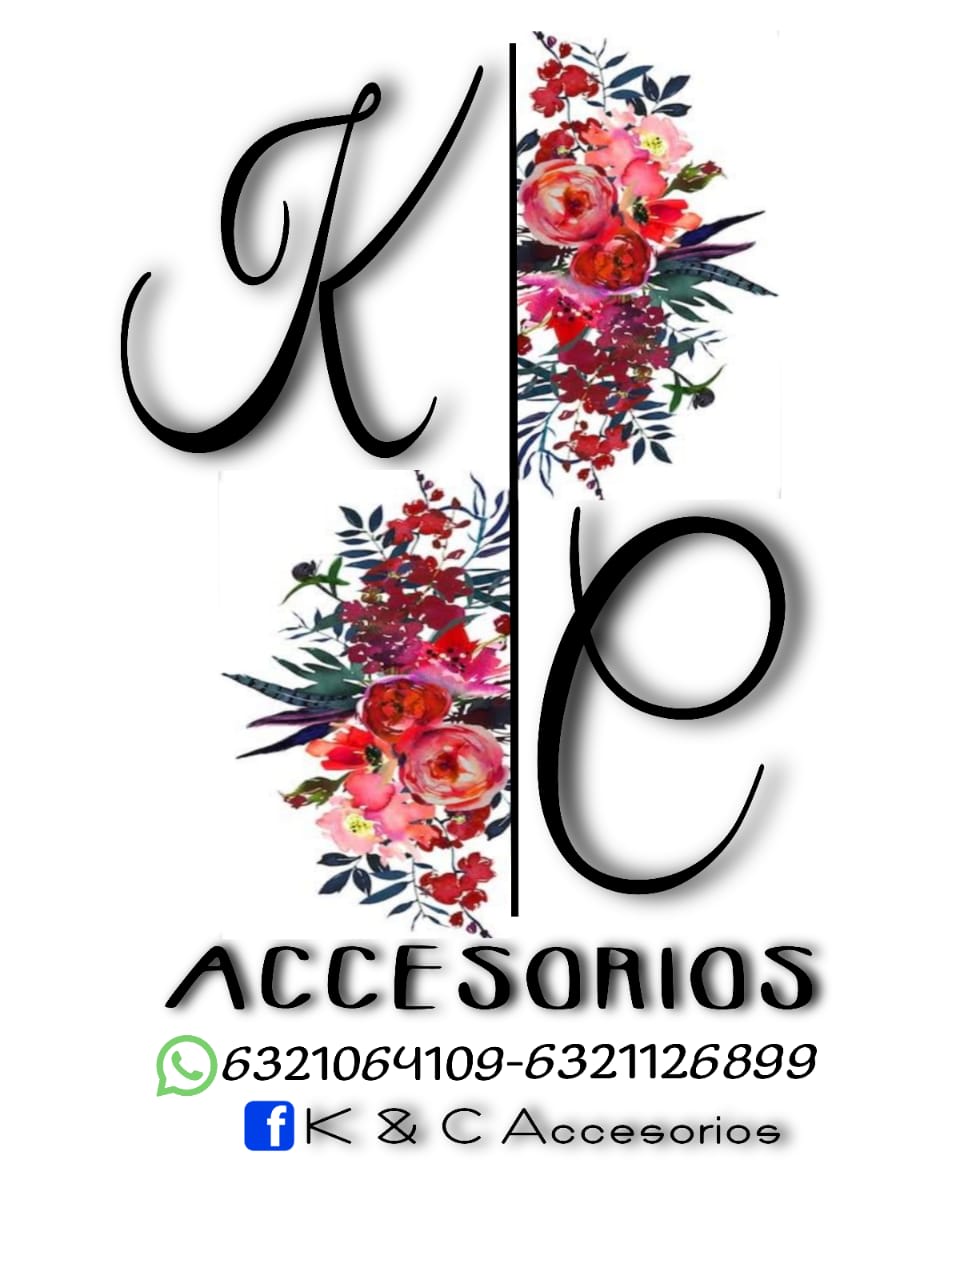 K&C Accesorios